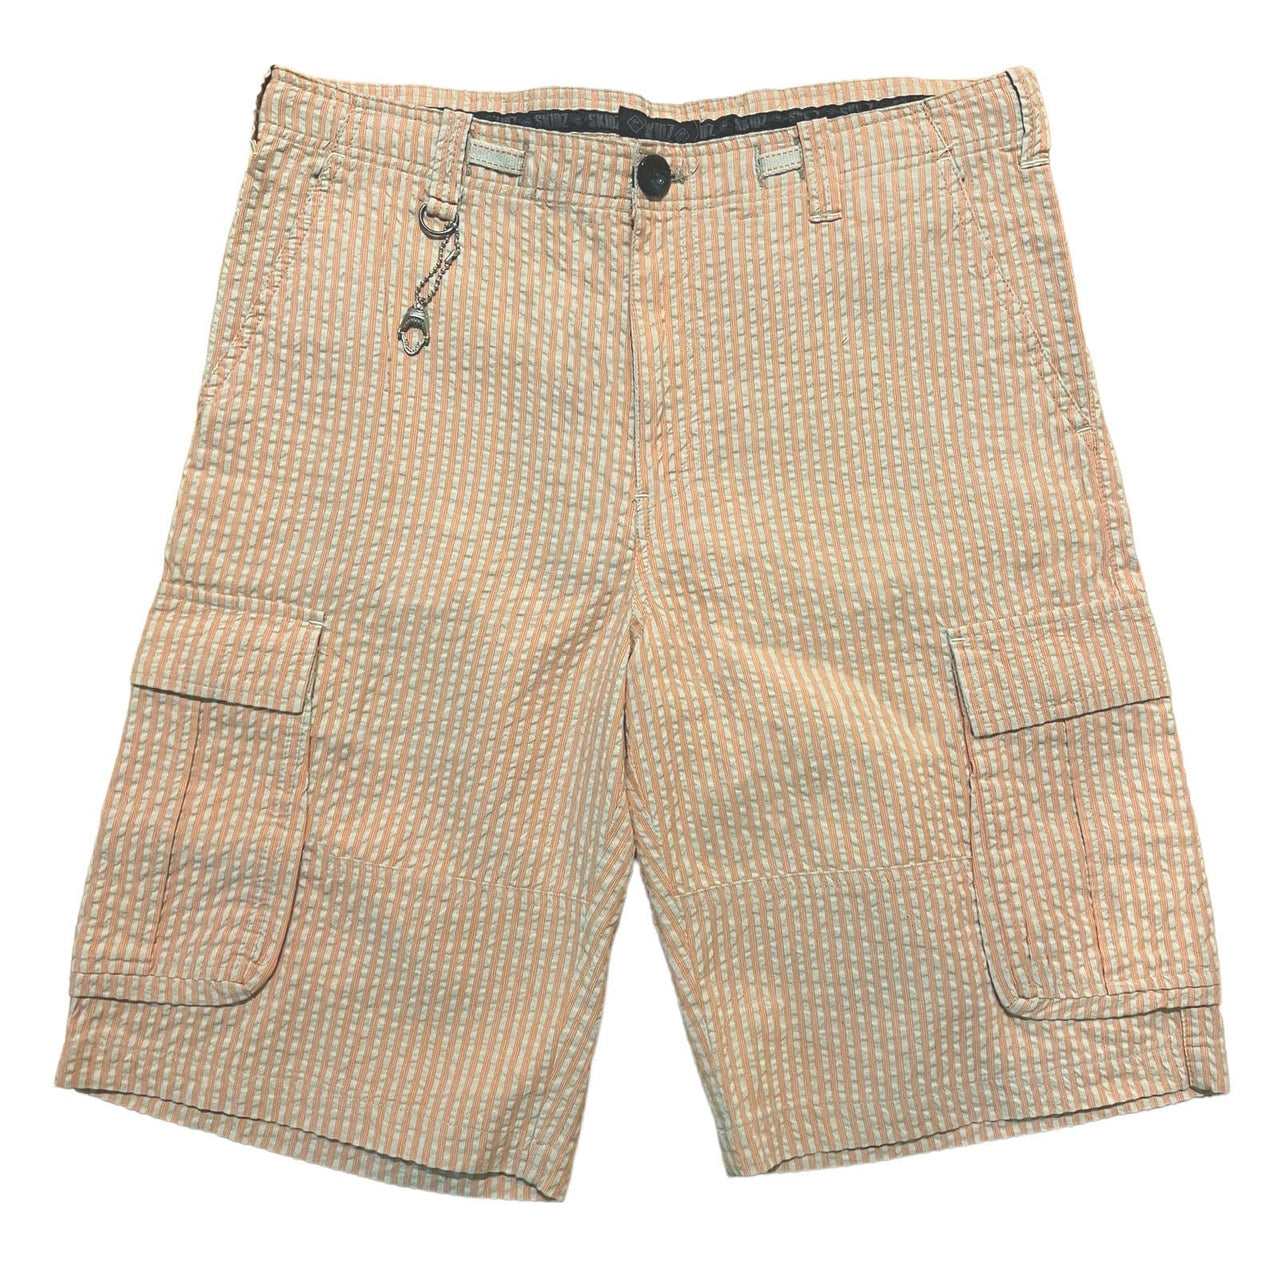 SKIDZ Shorts Seersucker Cargo Shorts - Orange Striped